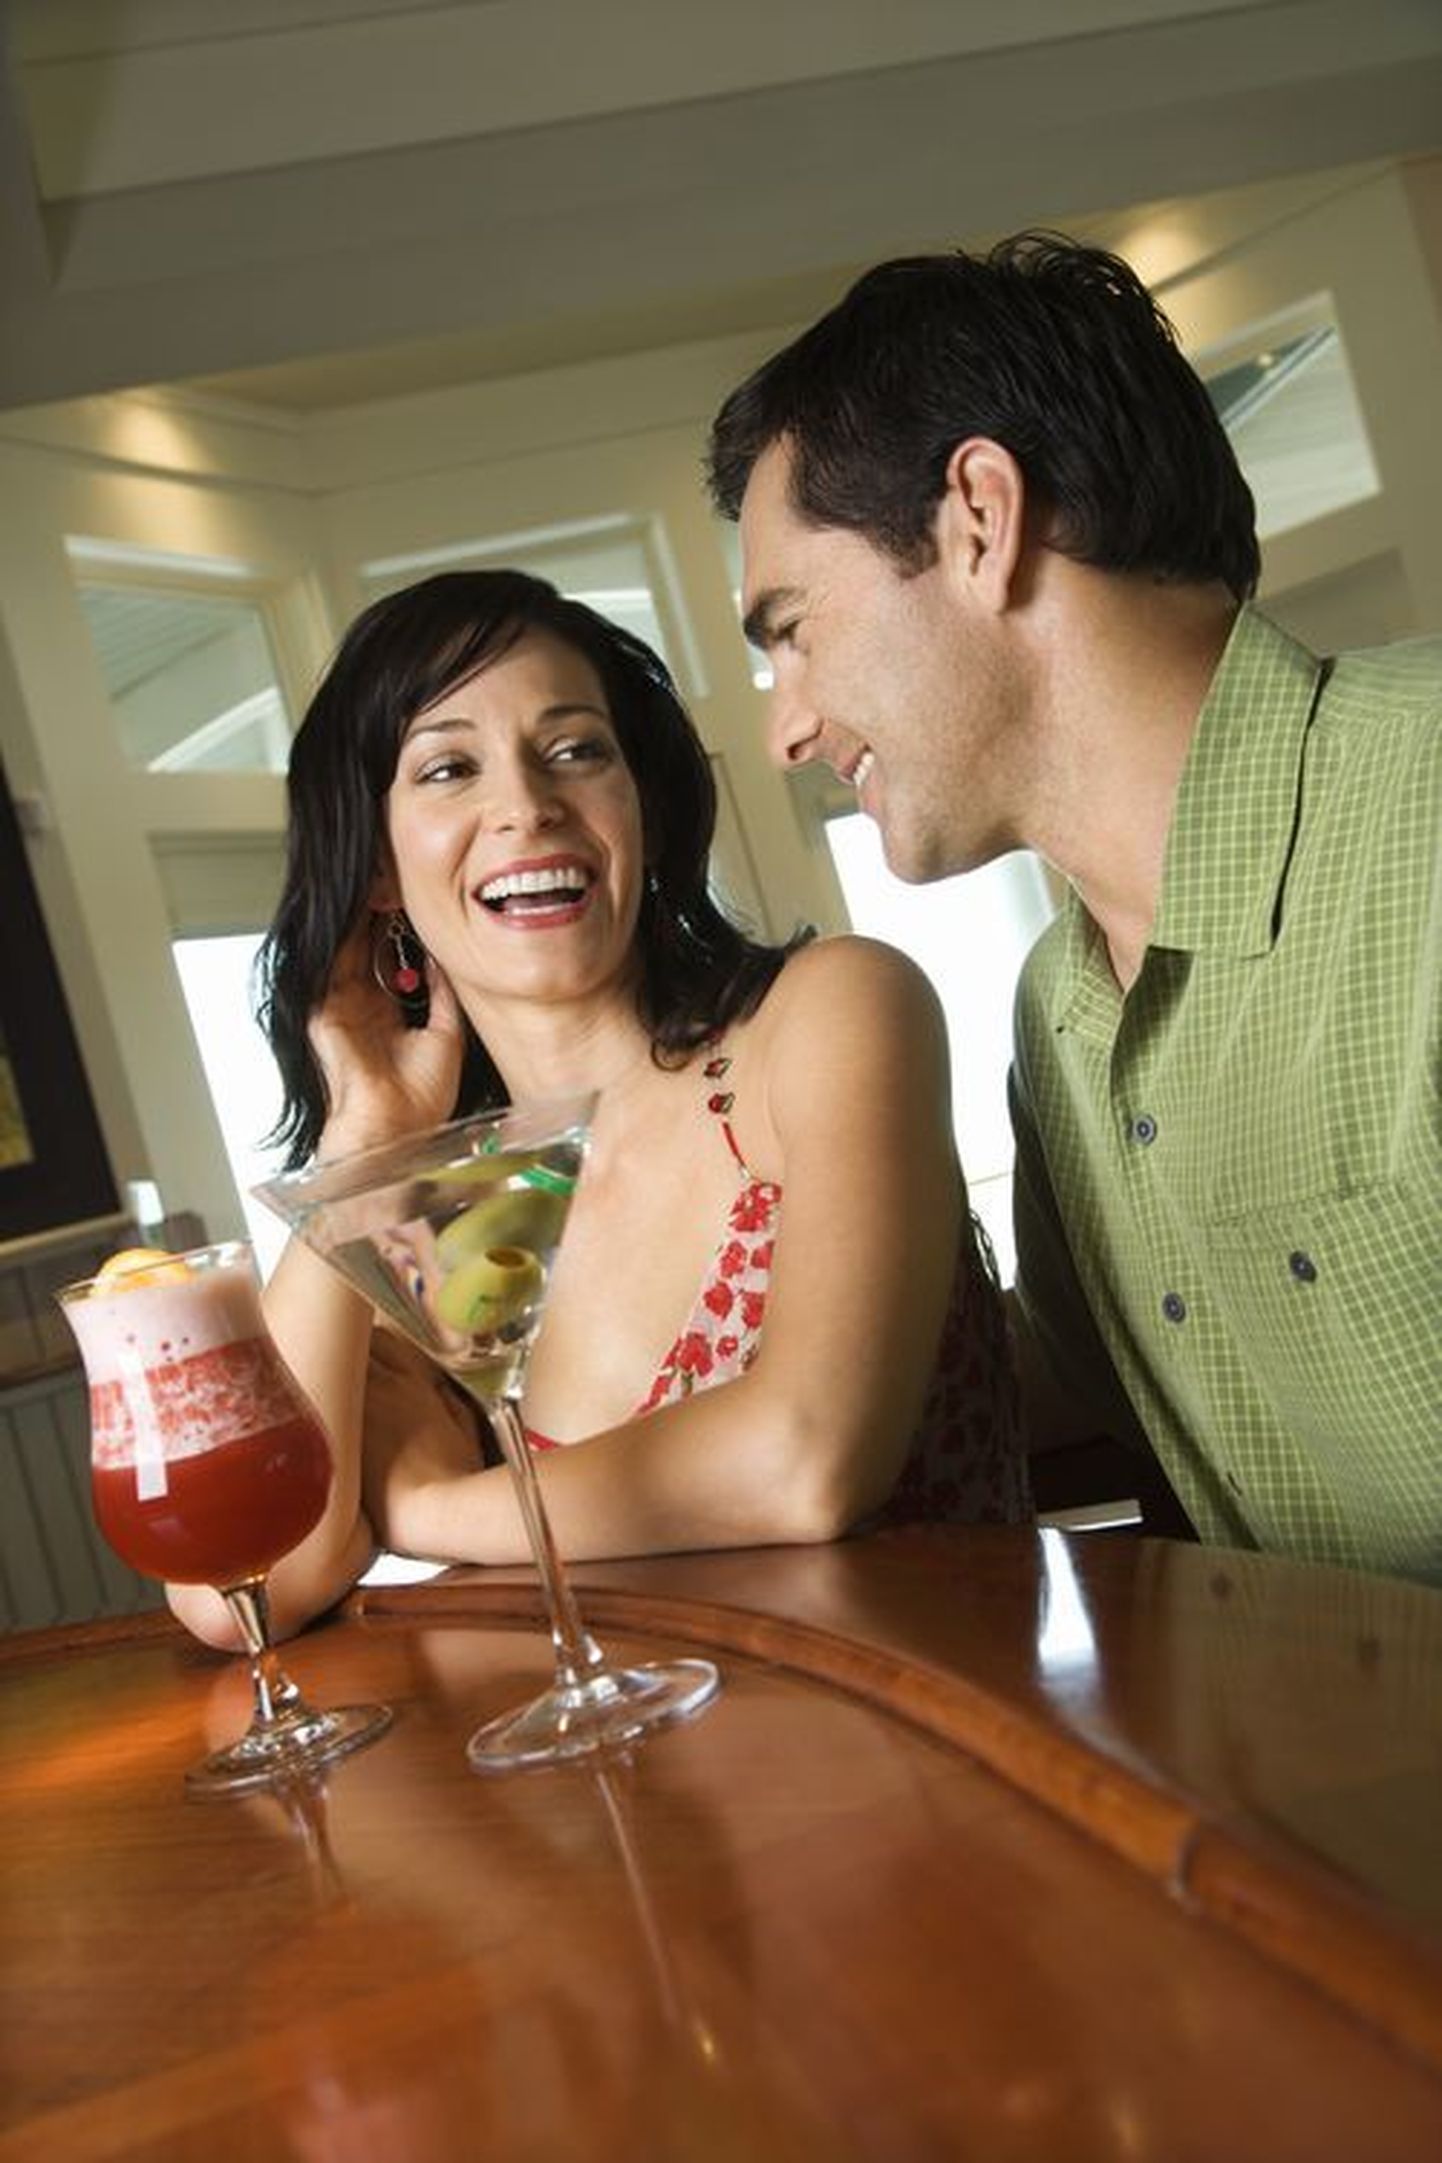 Ученые провели исследование и подтвердили: пьяным мужчинам женщины, как правило, кажутся более привлекательными, чем они есть на самом деле.